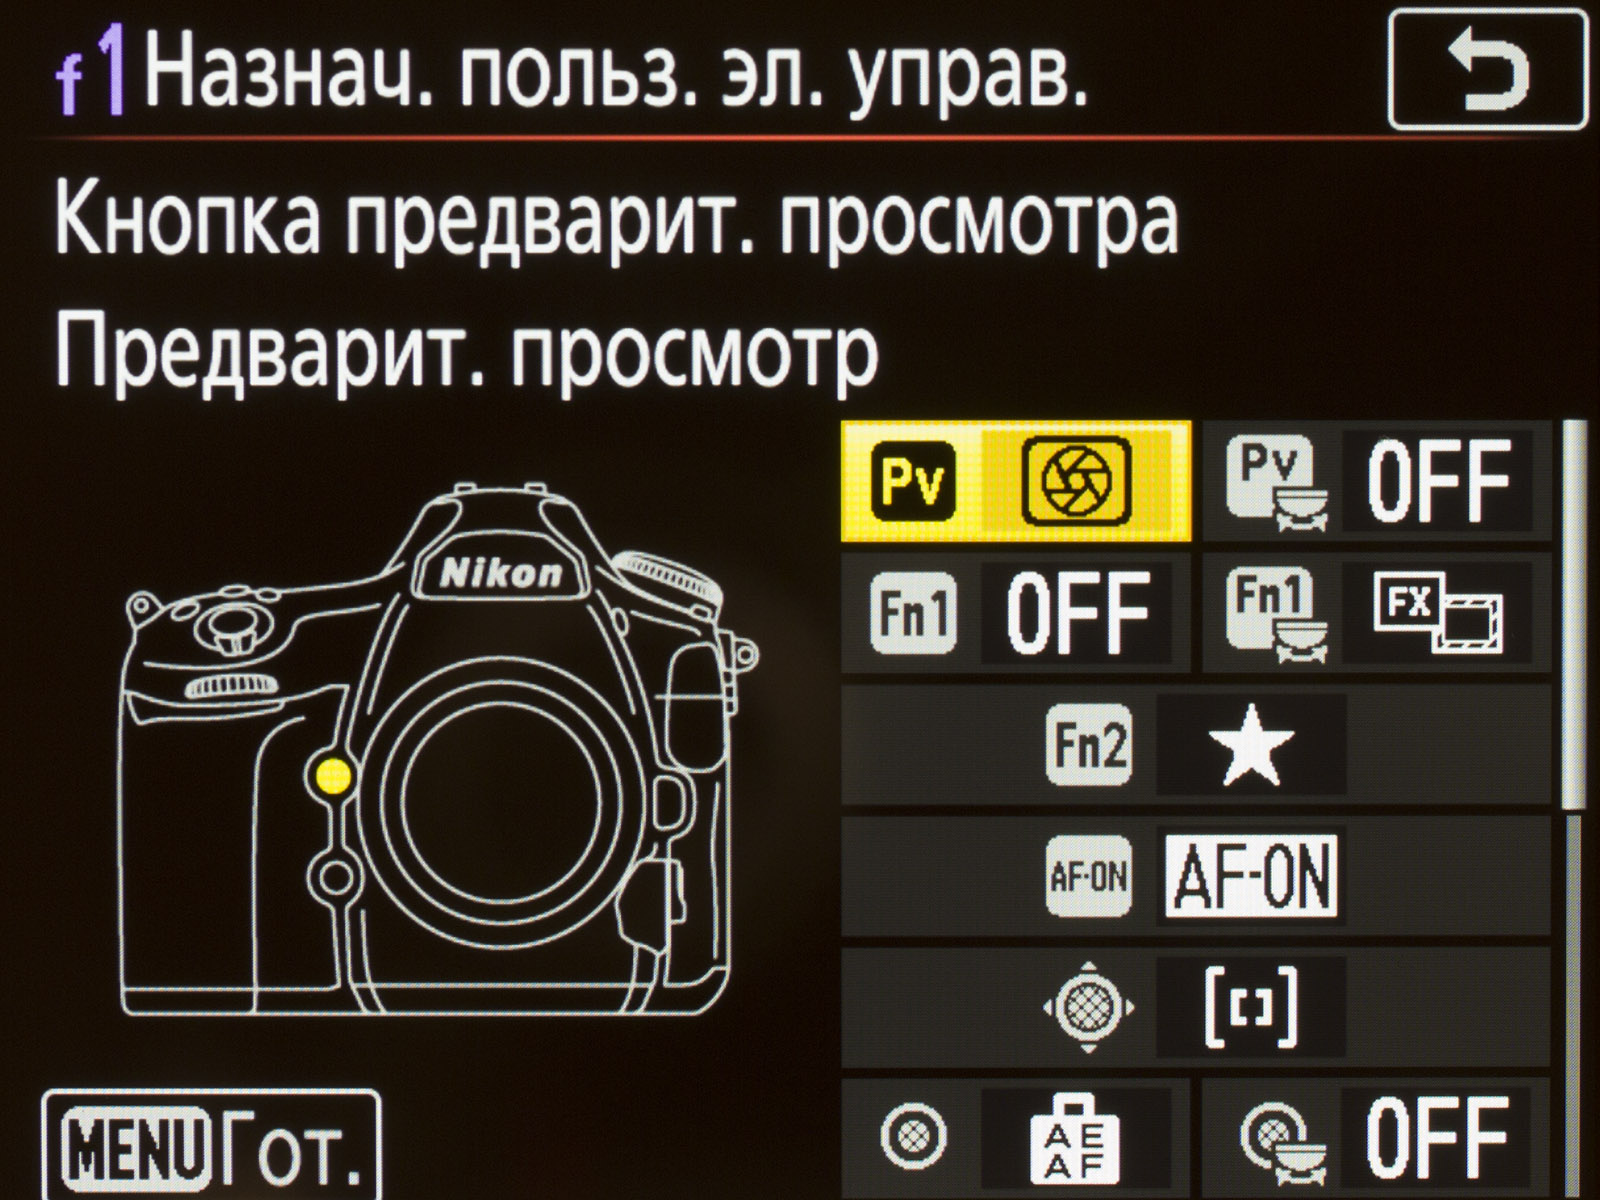 Ручные настройки камеры. Настройки фотоаппарата. Nikon кнопка предварительного просмотра.